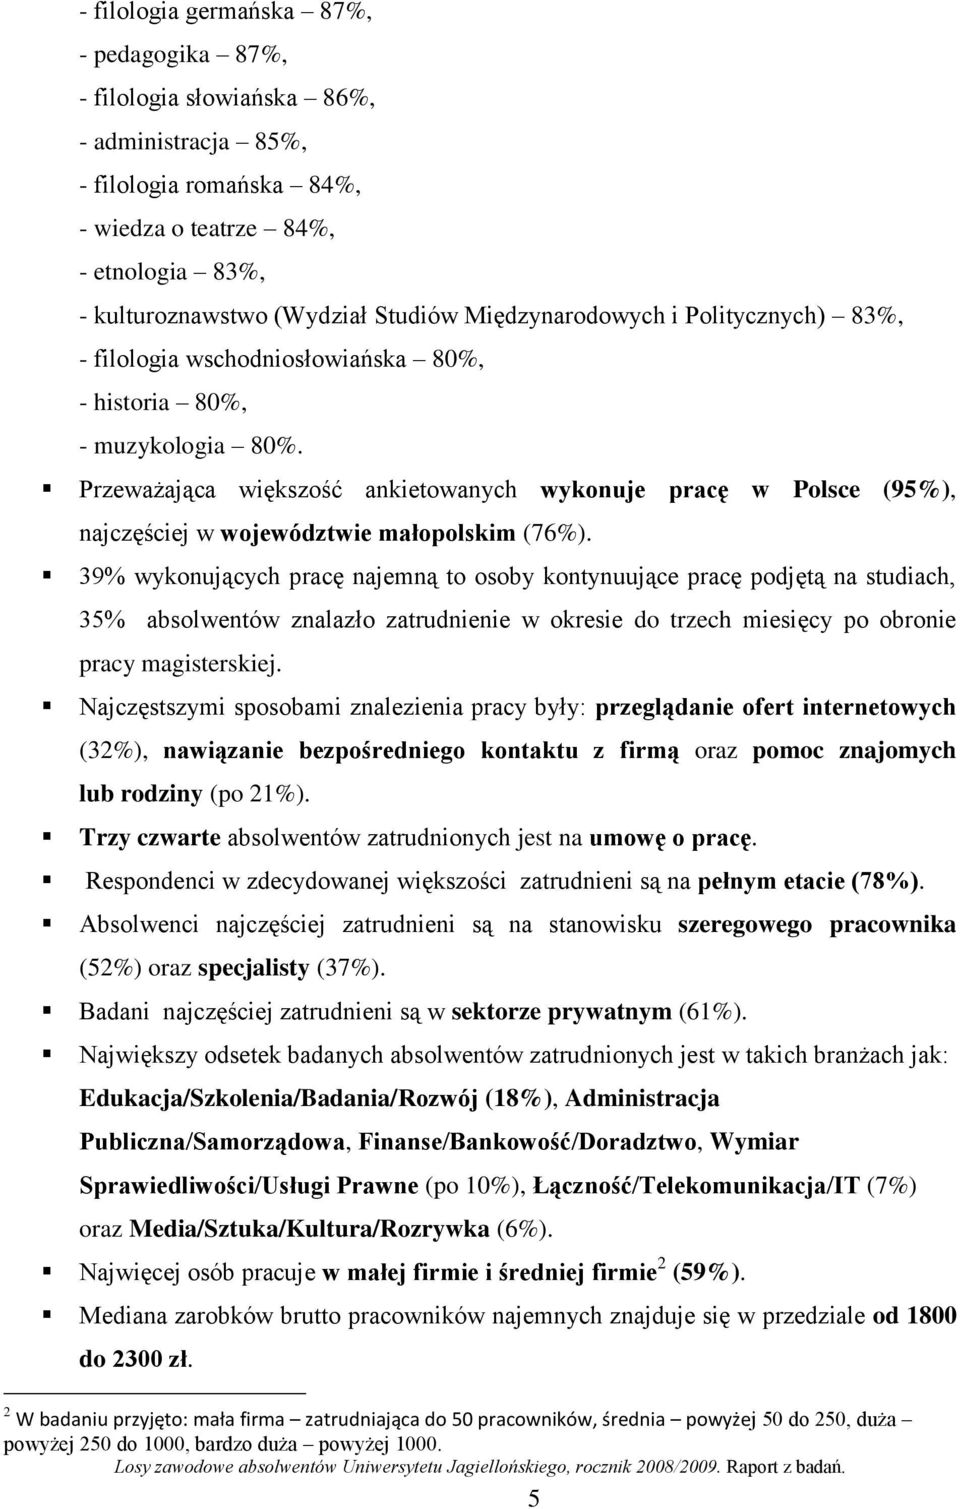 Przeważająca większość ankietowanych wykonuje pracę w Polsce (95%), najczęściej w województwie małopolskim (76%).